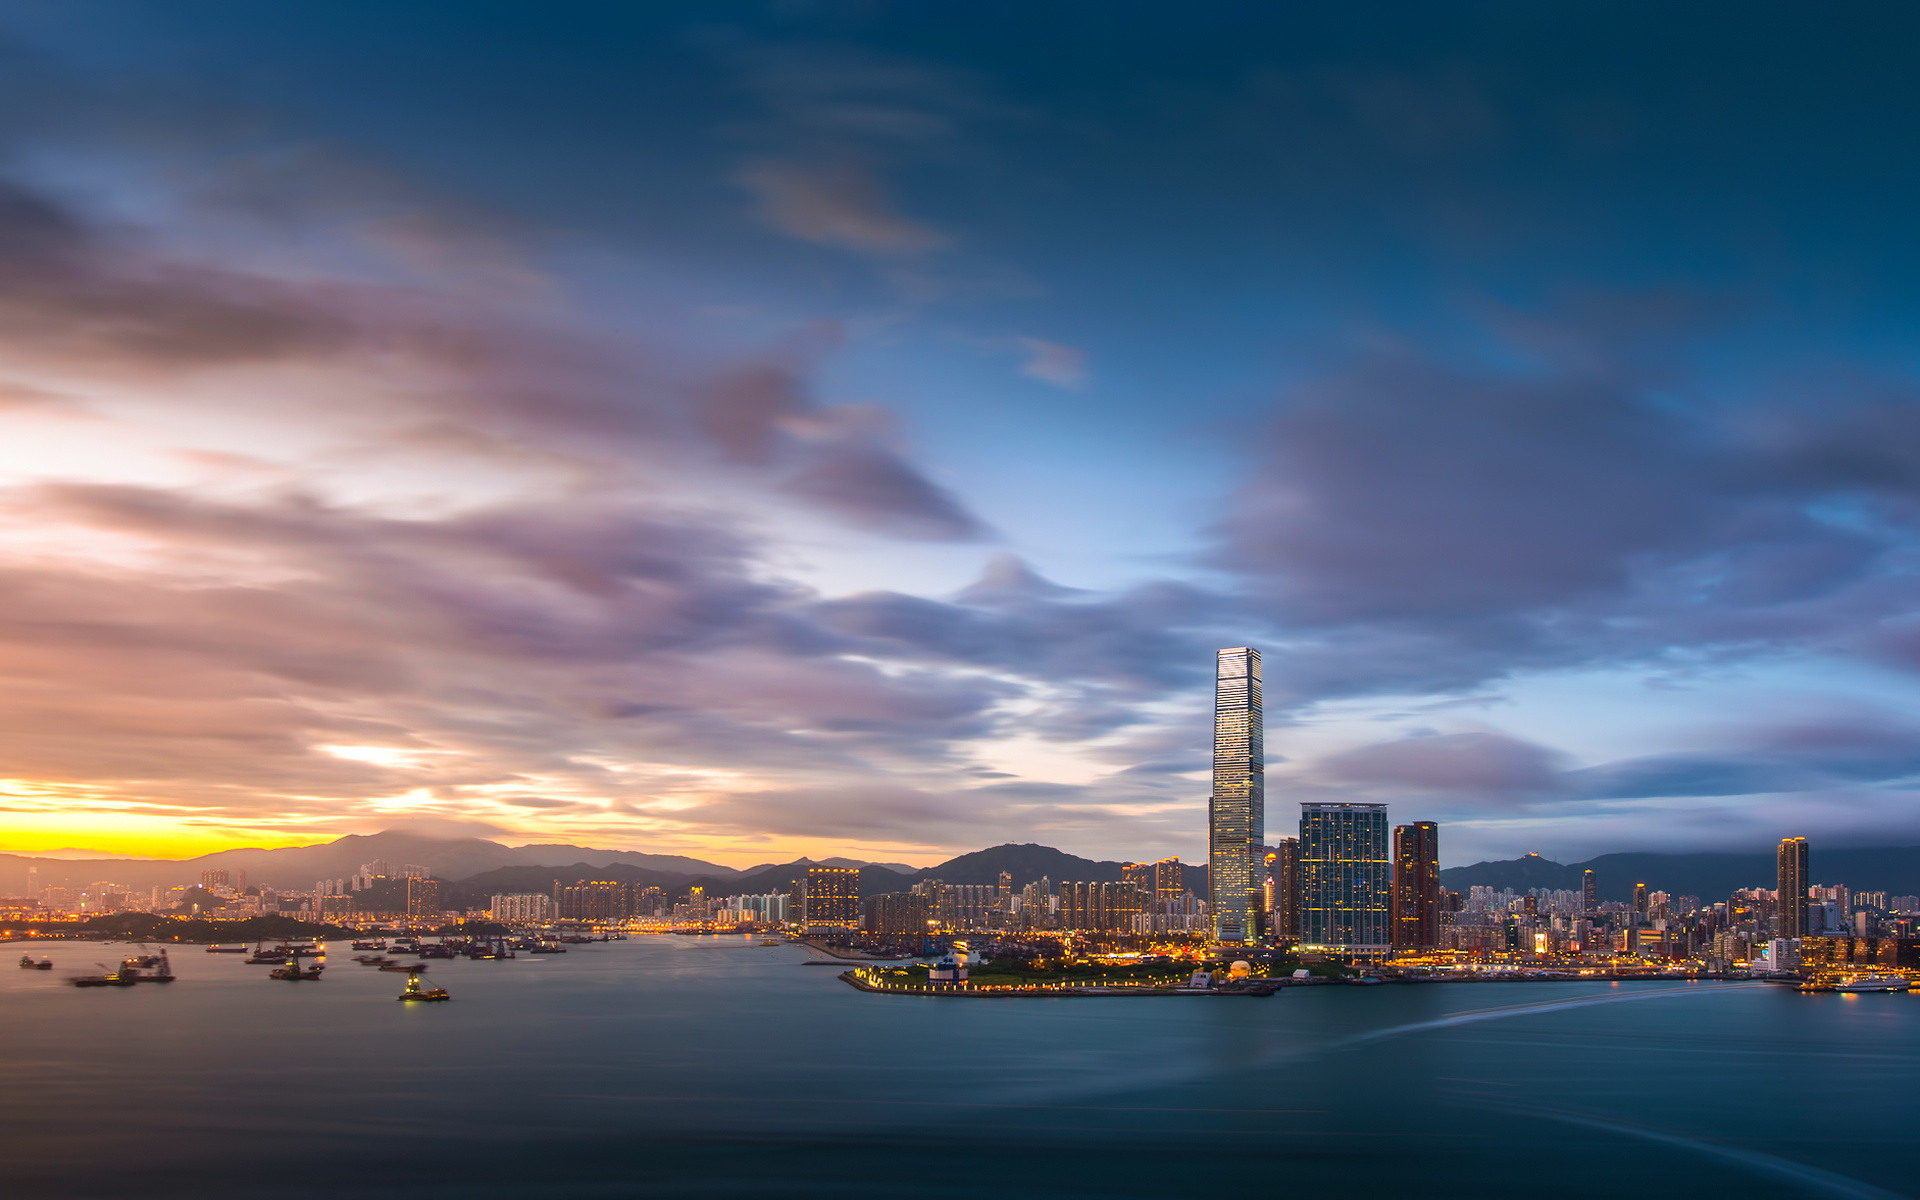 홍콩의 hd 벽지,하늘,수도권,도시 풍경,시티,낮